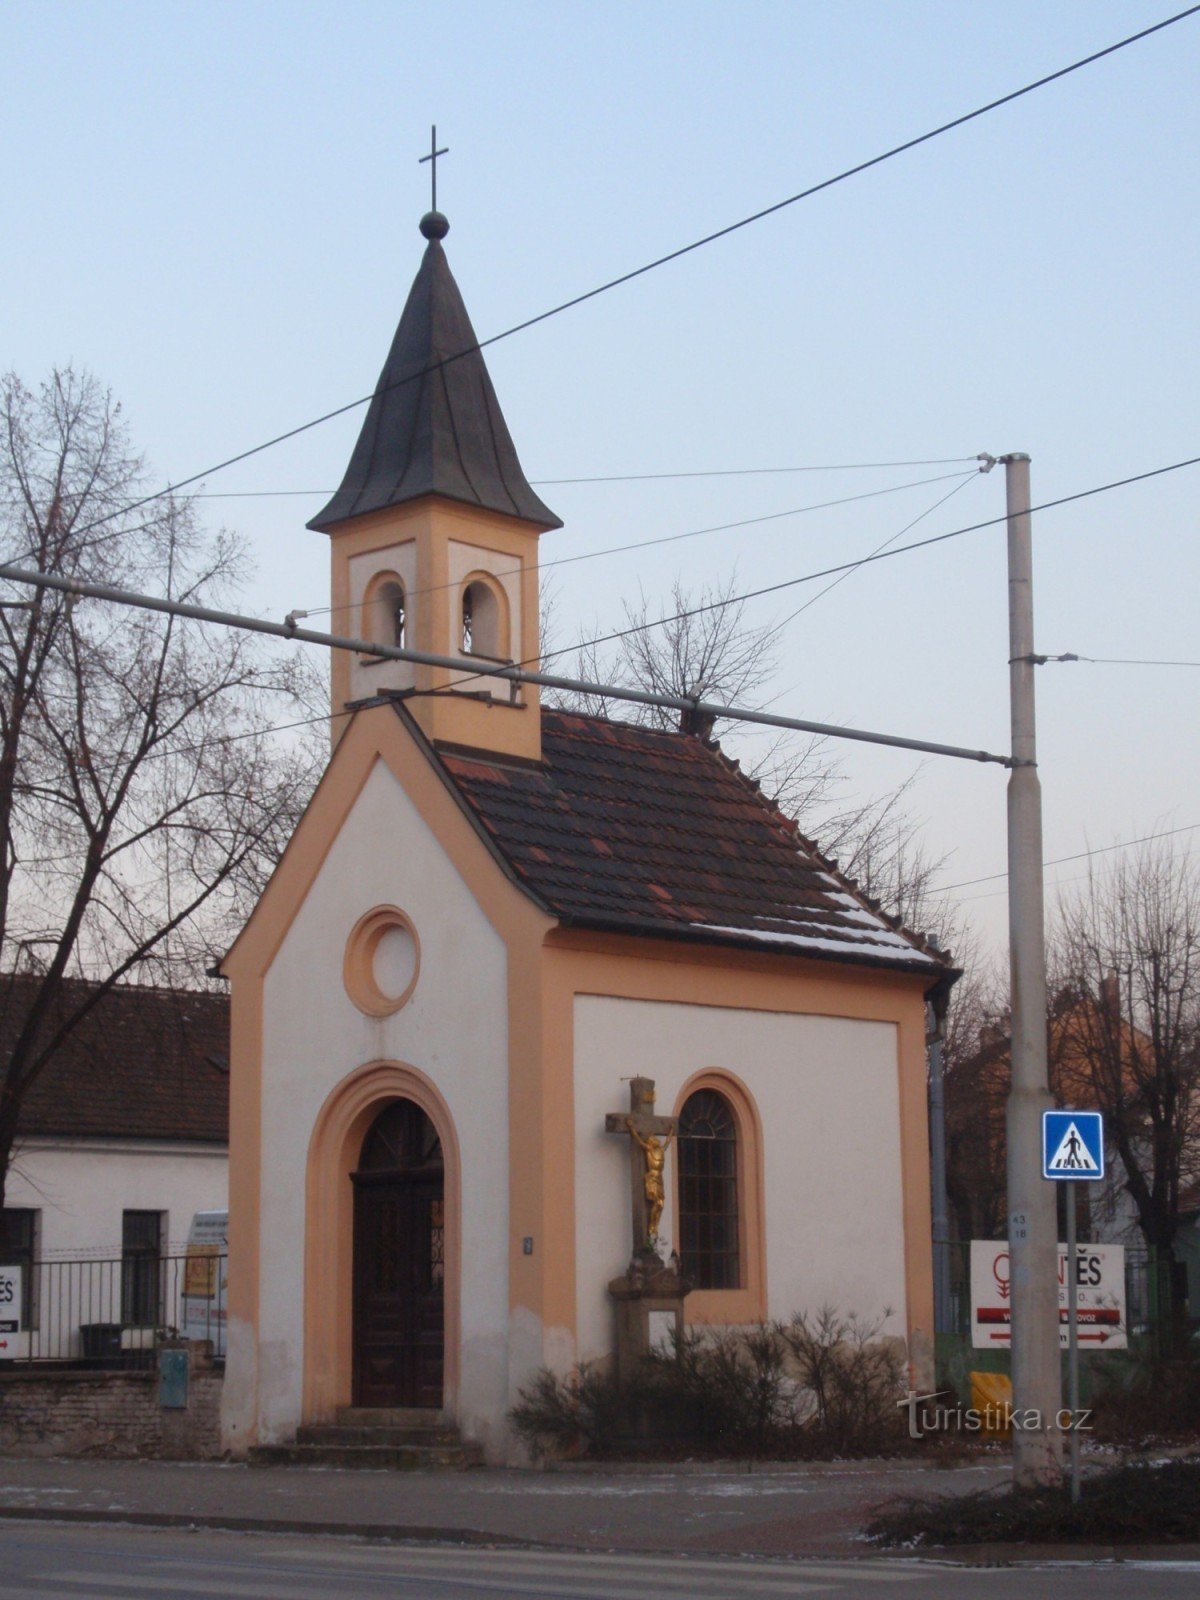 Kapel van St. Františka in Brno-Židenice